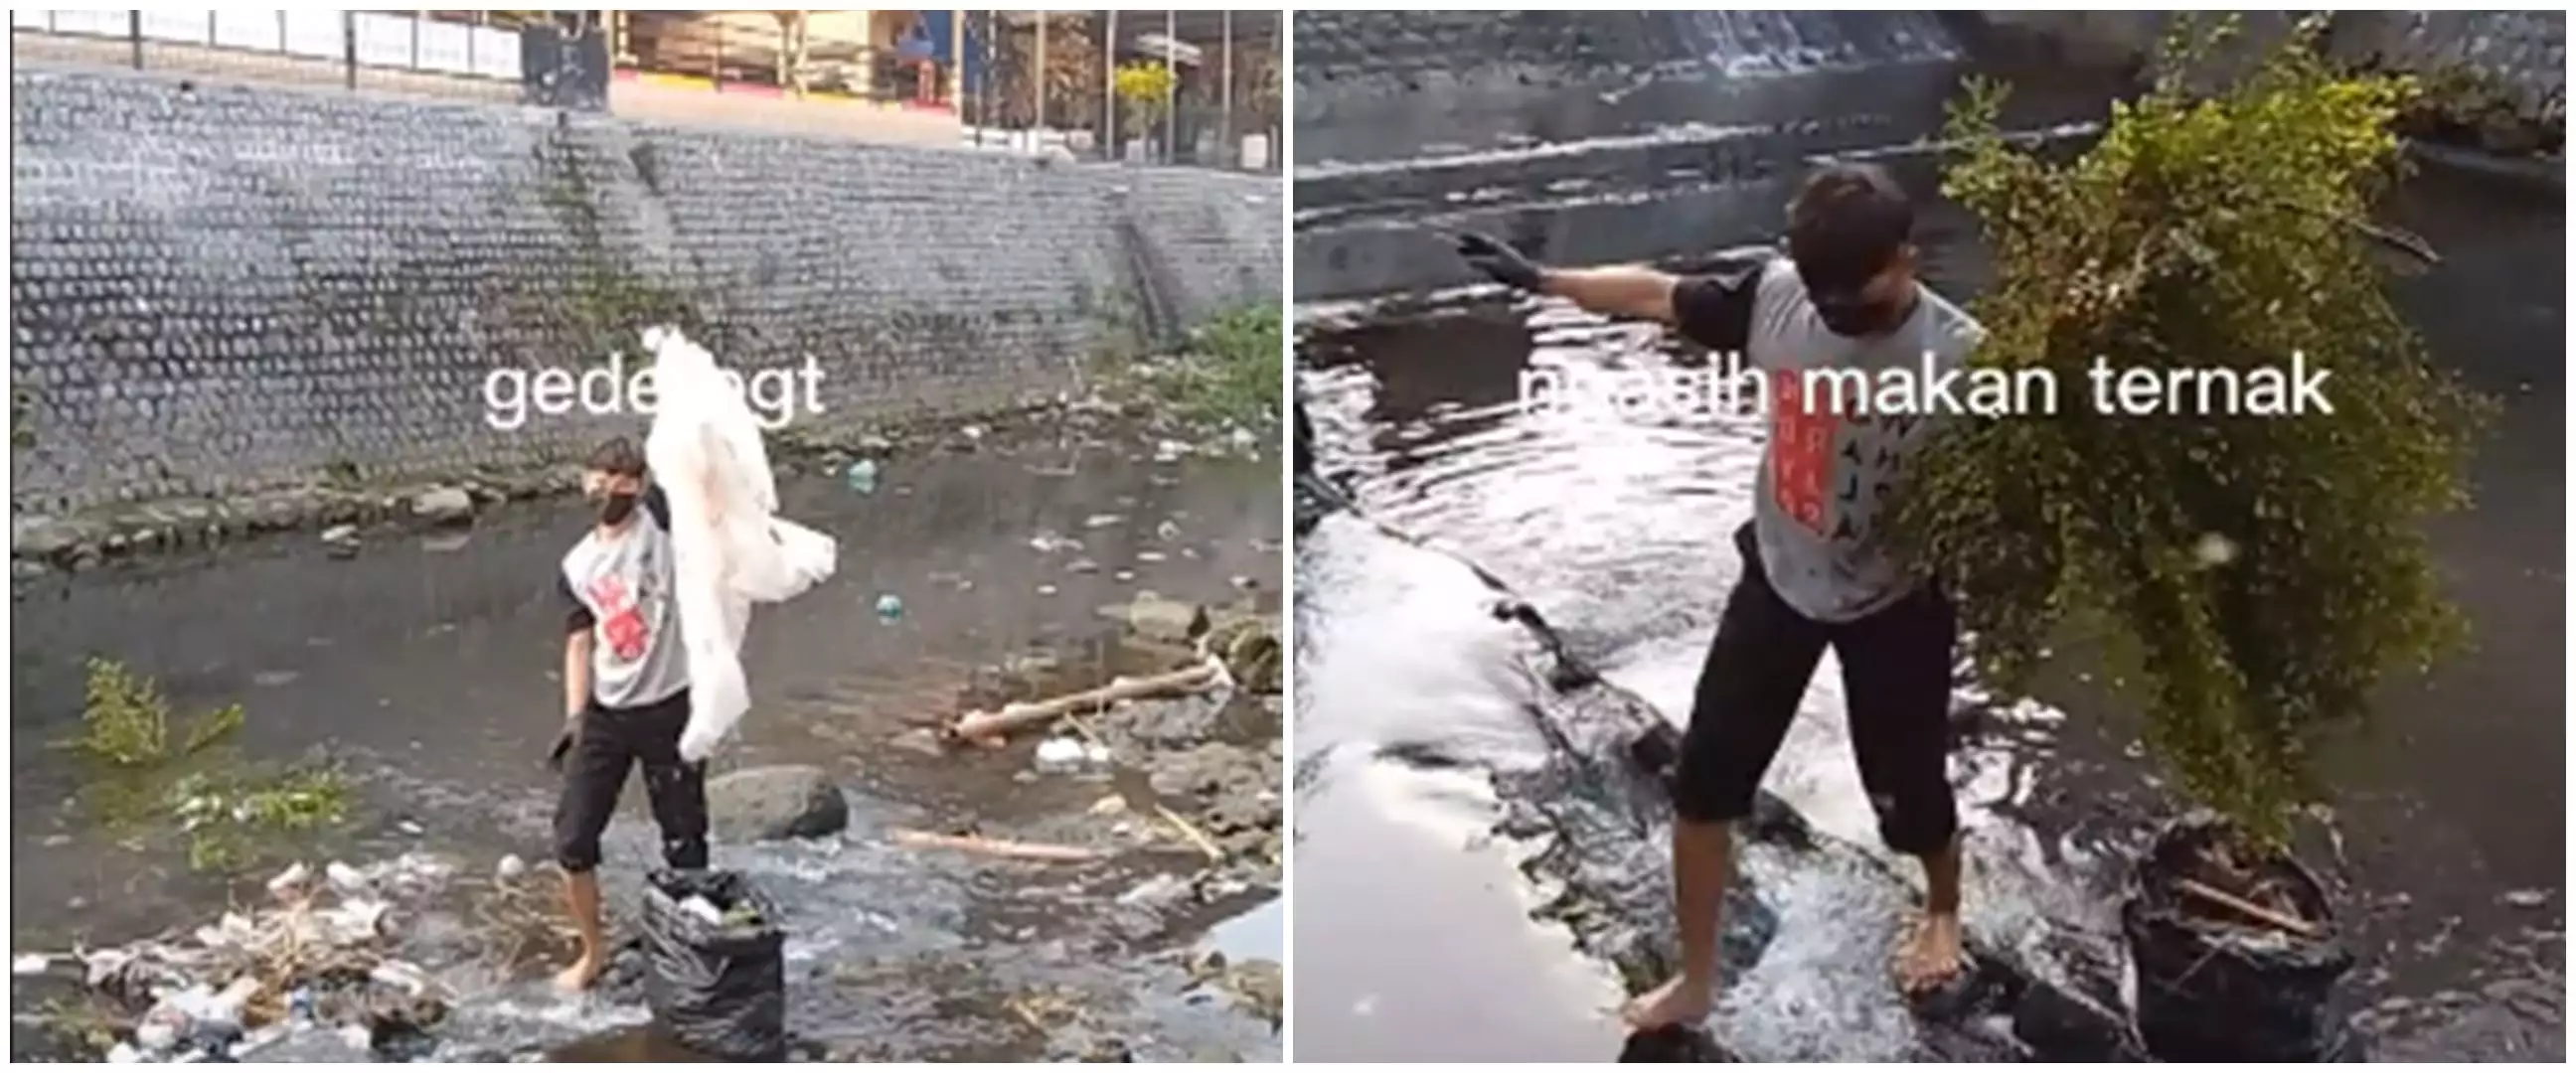 Aksi pemuda bersihkan sampah di sungai tanpa rasa jijik, bikin salut